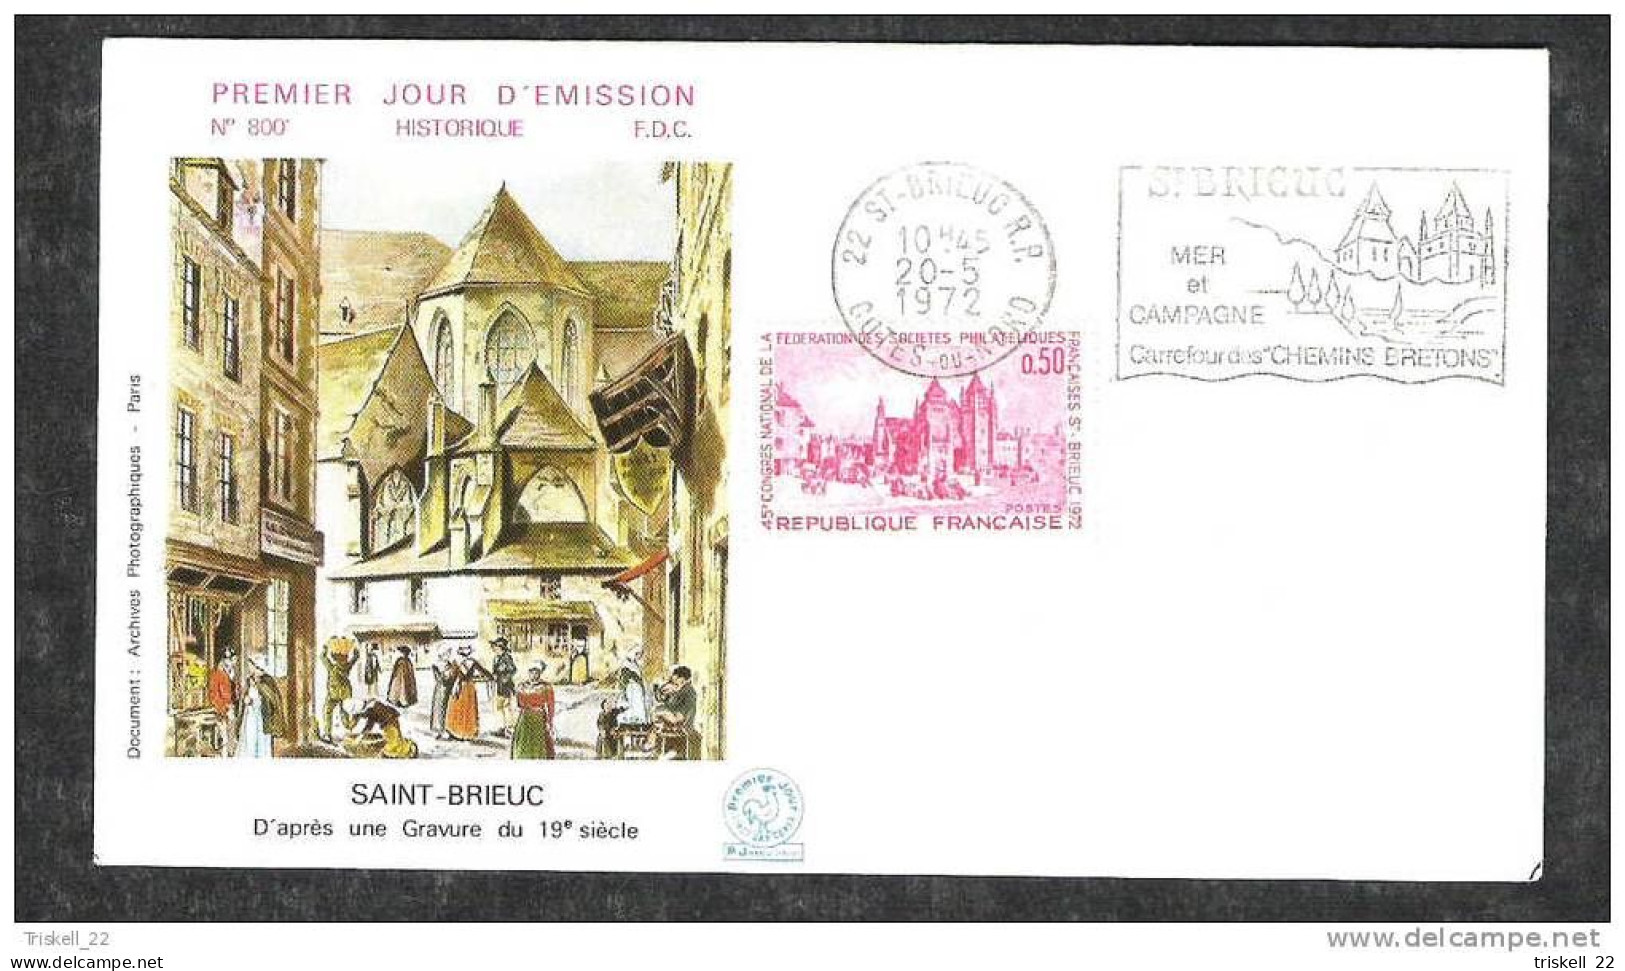 FDC : lot de 3 cartes et 7 enveloppes Saint-Brieuc 45° congrès phil. 1972 - vente au détail sur demande